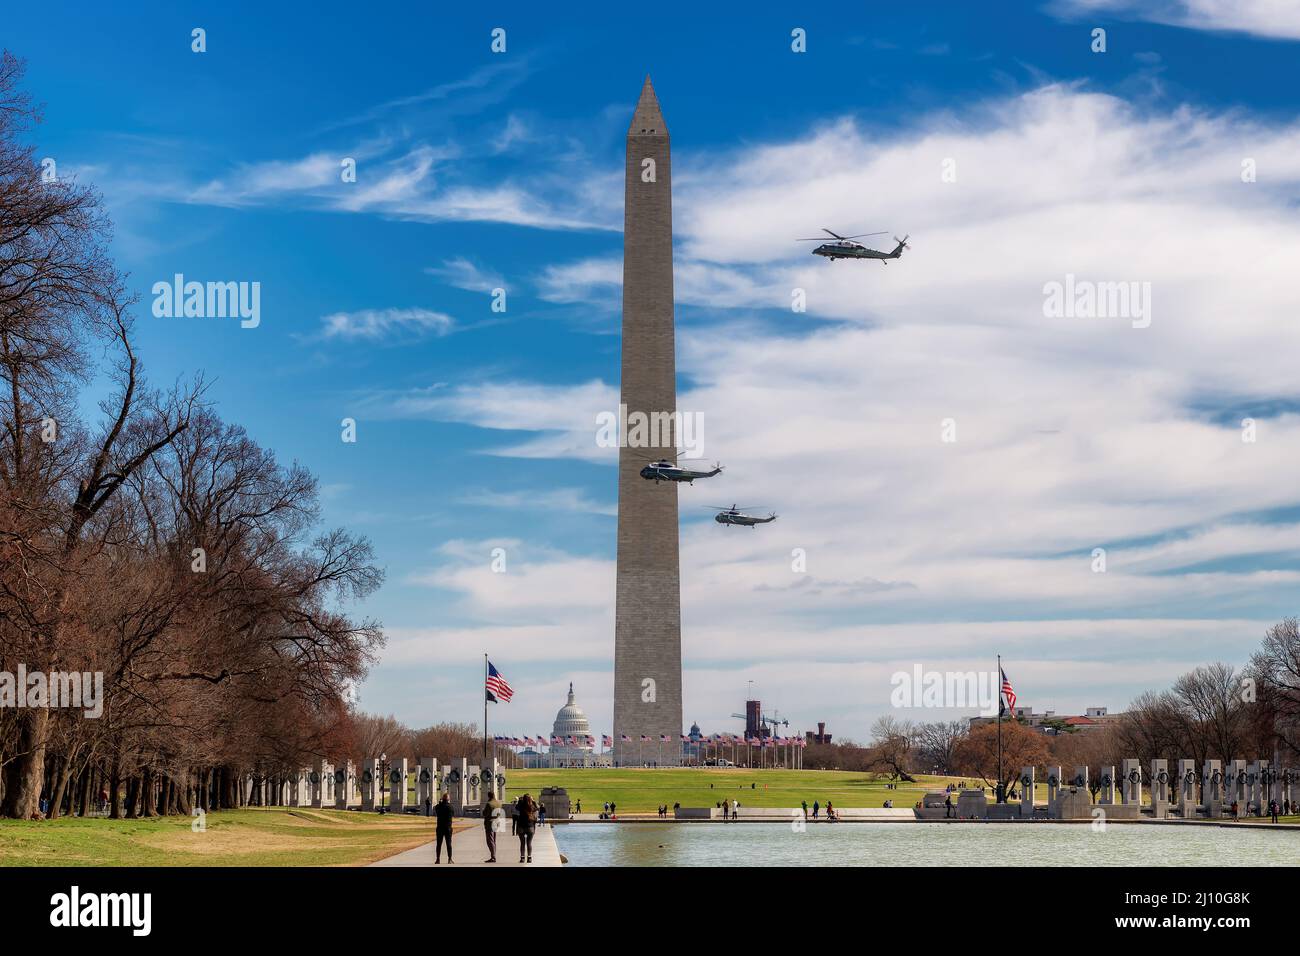 Helicópteros en vuelo en el Monumento a Washington con el Presidente de Estados Unidos, Washington, DC, EE.UU Foto de stock